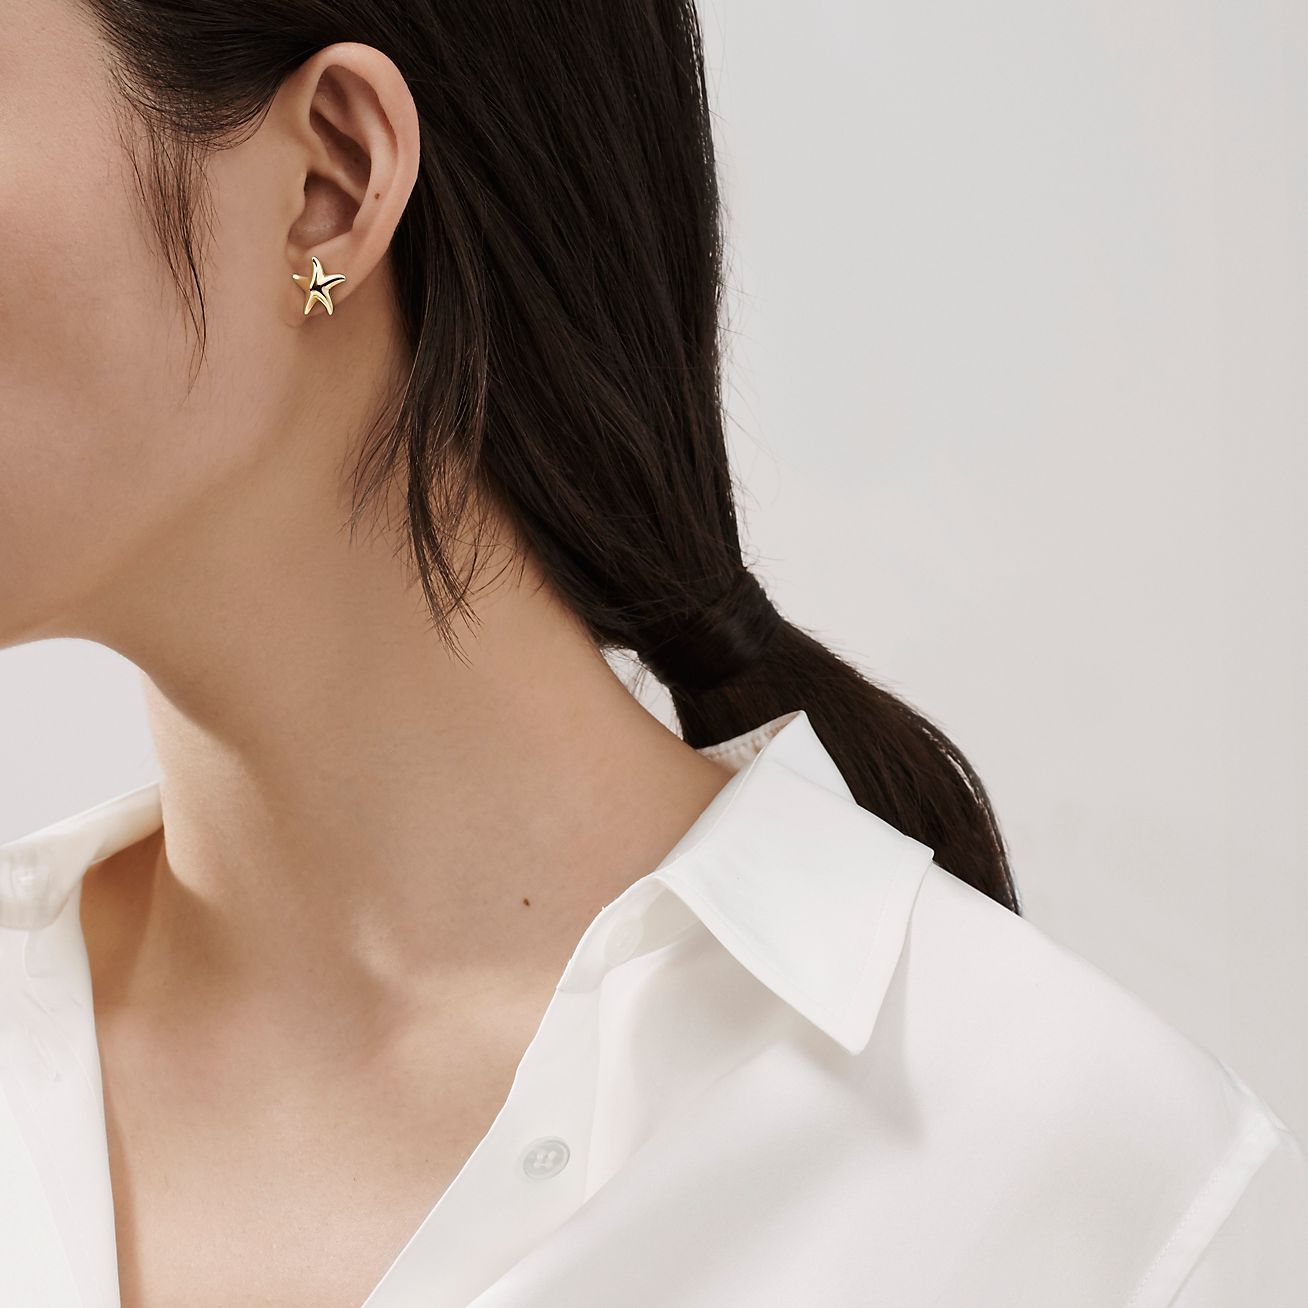 Elsa Peretti® Starfish earrings in 18k 